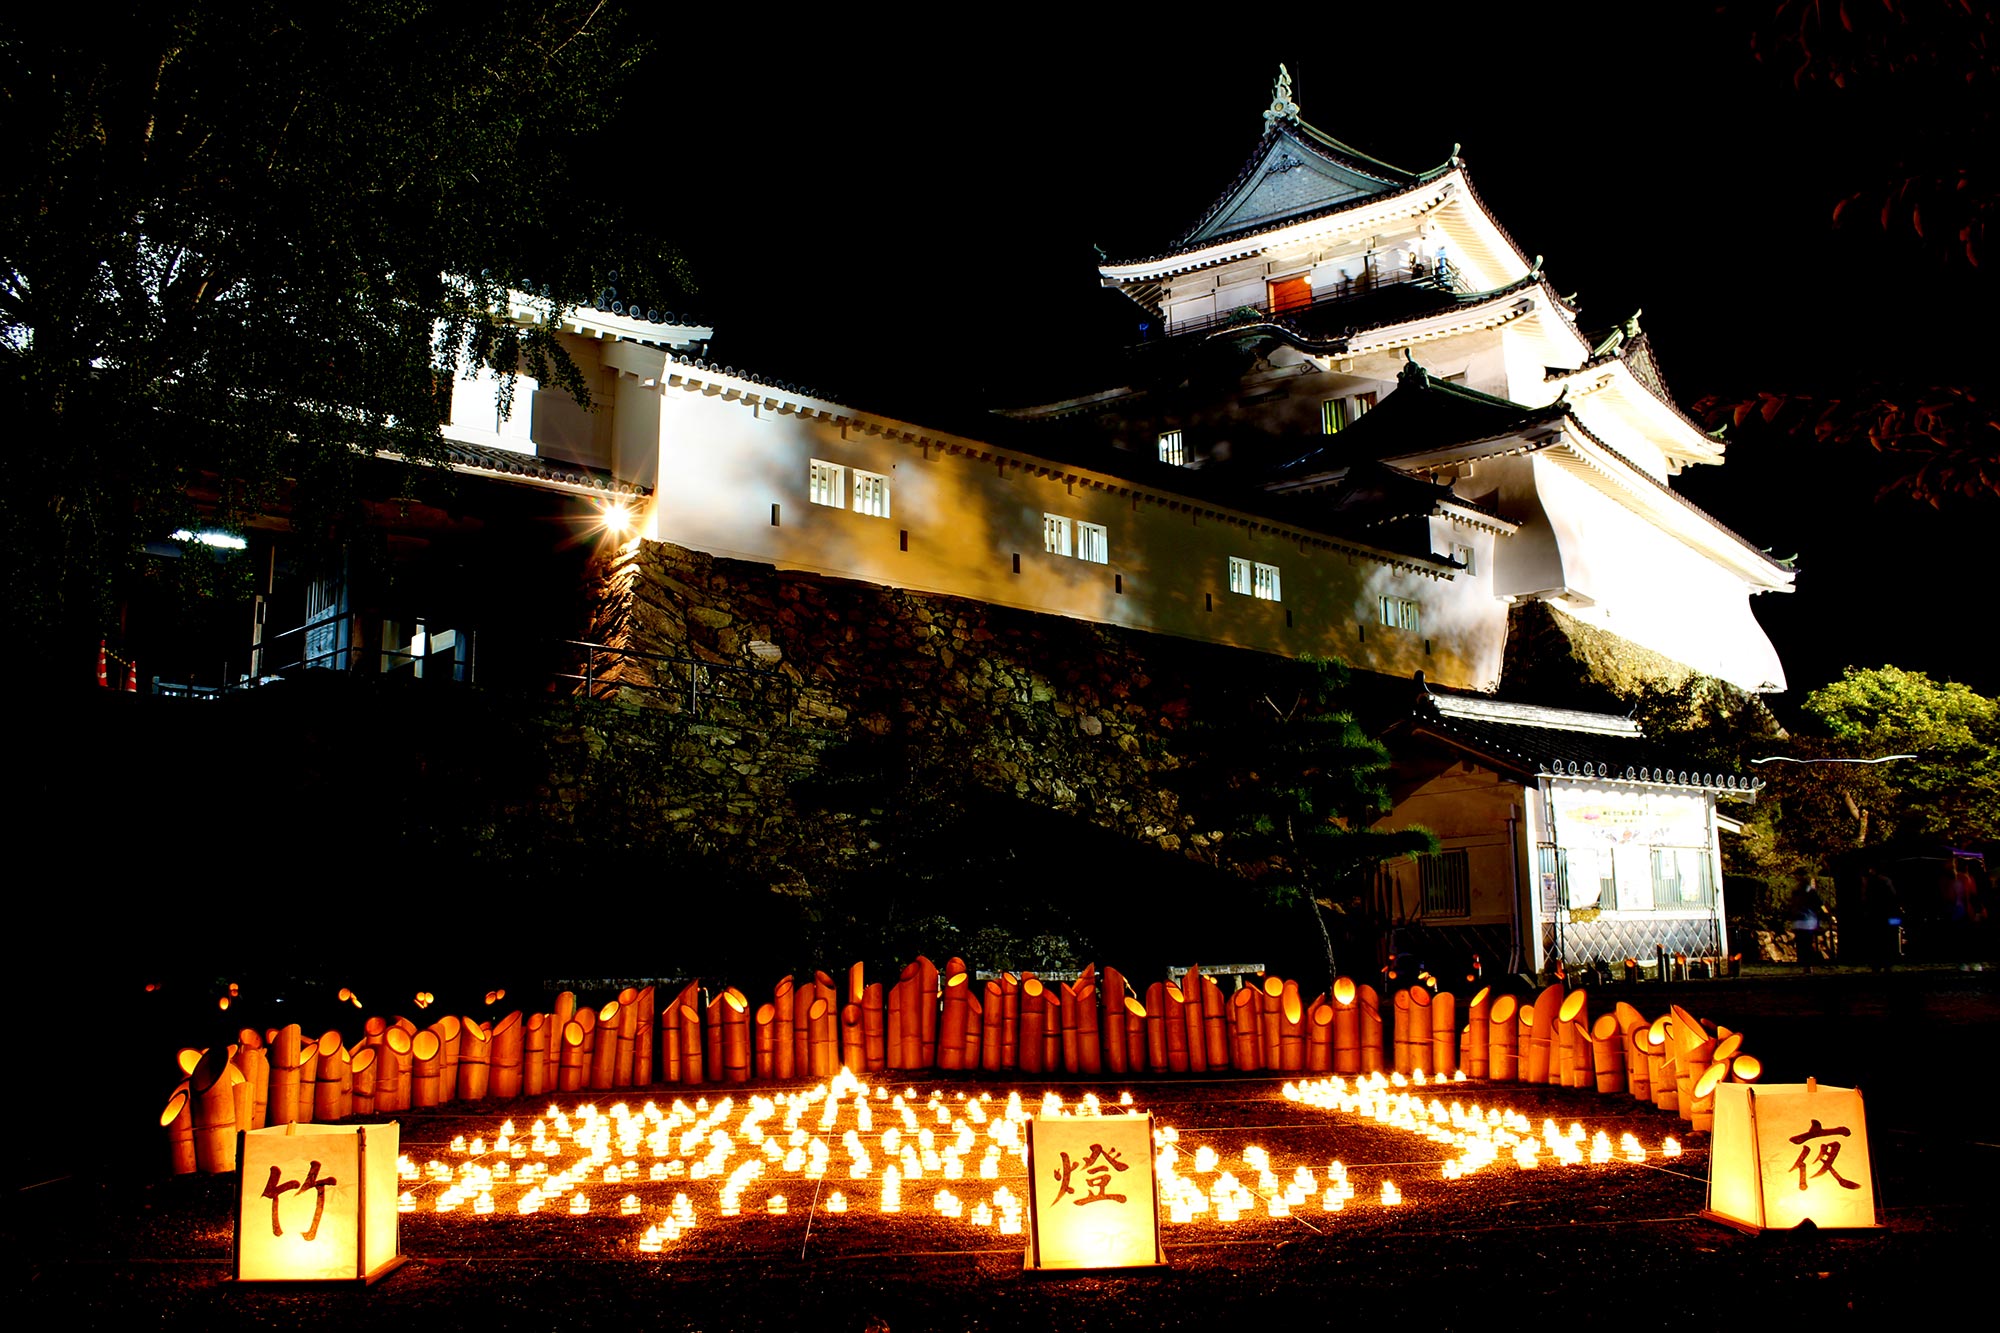 和歌山城まちなかキャンドルイルミネーション・竹燈夜